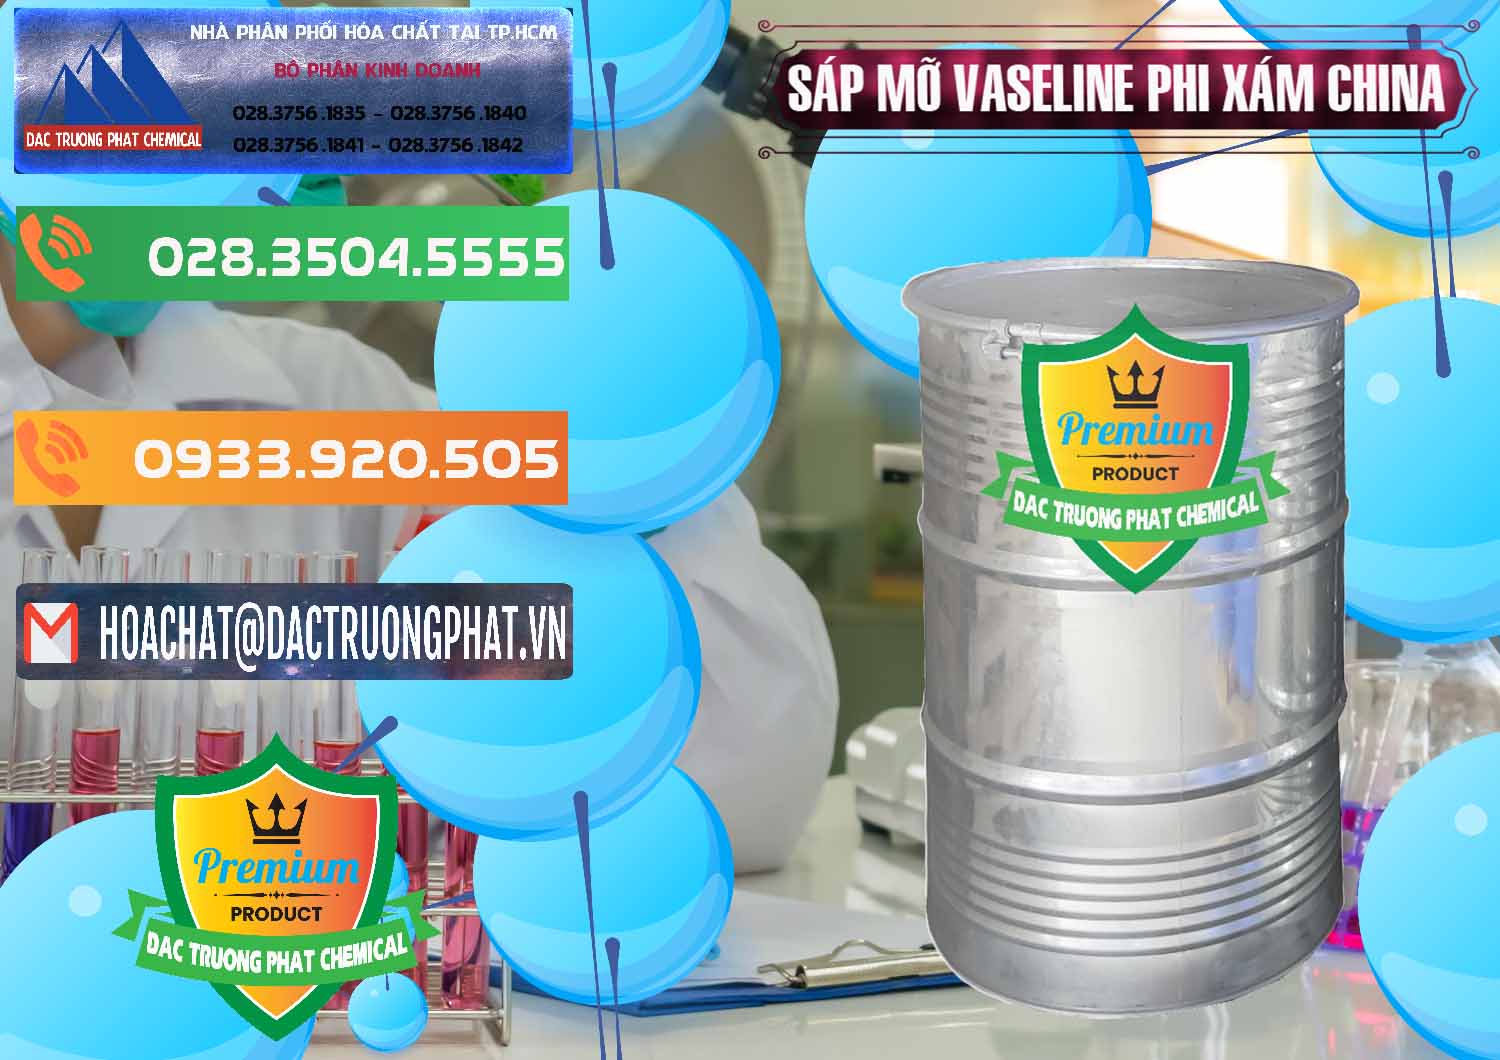 Cty chuyên cung cấp & bán Sáp Mỡ Vaseline Phi Xám Trung Quốc China - 0291 - Chuyên kinh doanh ( phân phối ) hóa chất tại TP.HCM - hoachatxulynuoc.com.vn